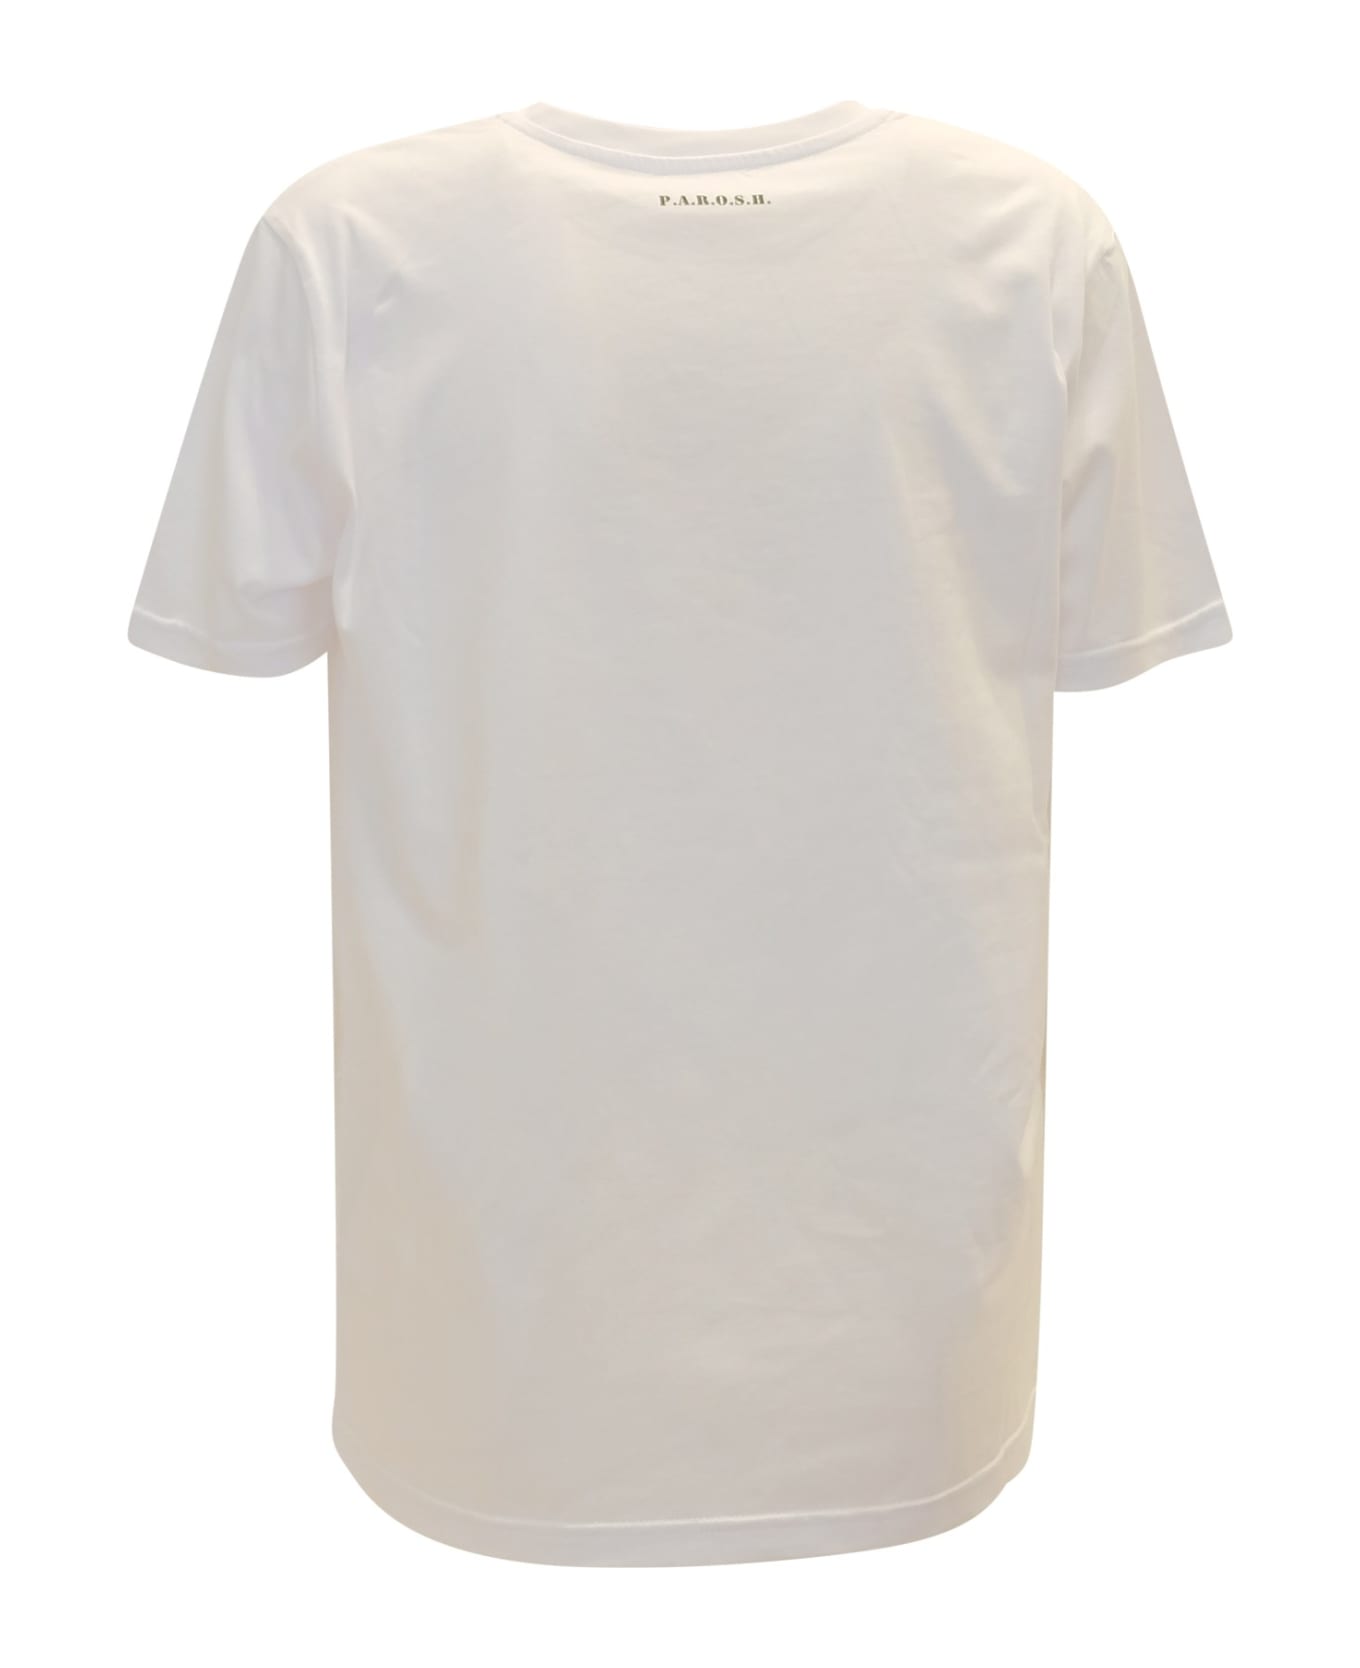 Parosh 002 Culmine White Cotton T-shirt - WHITE